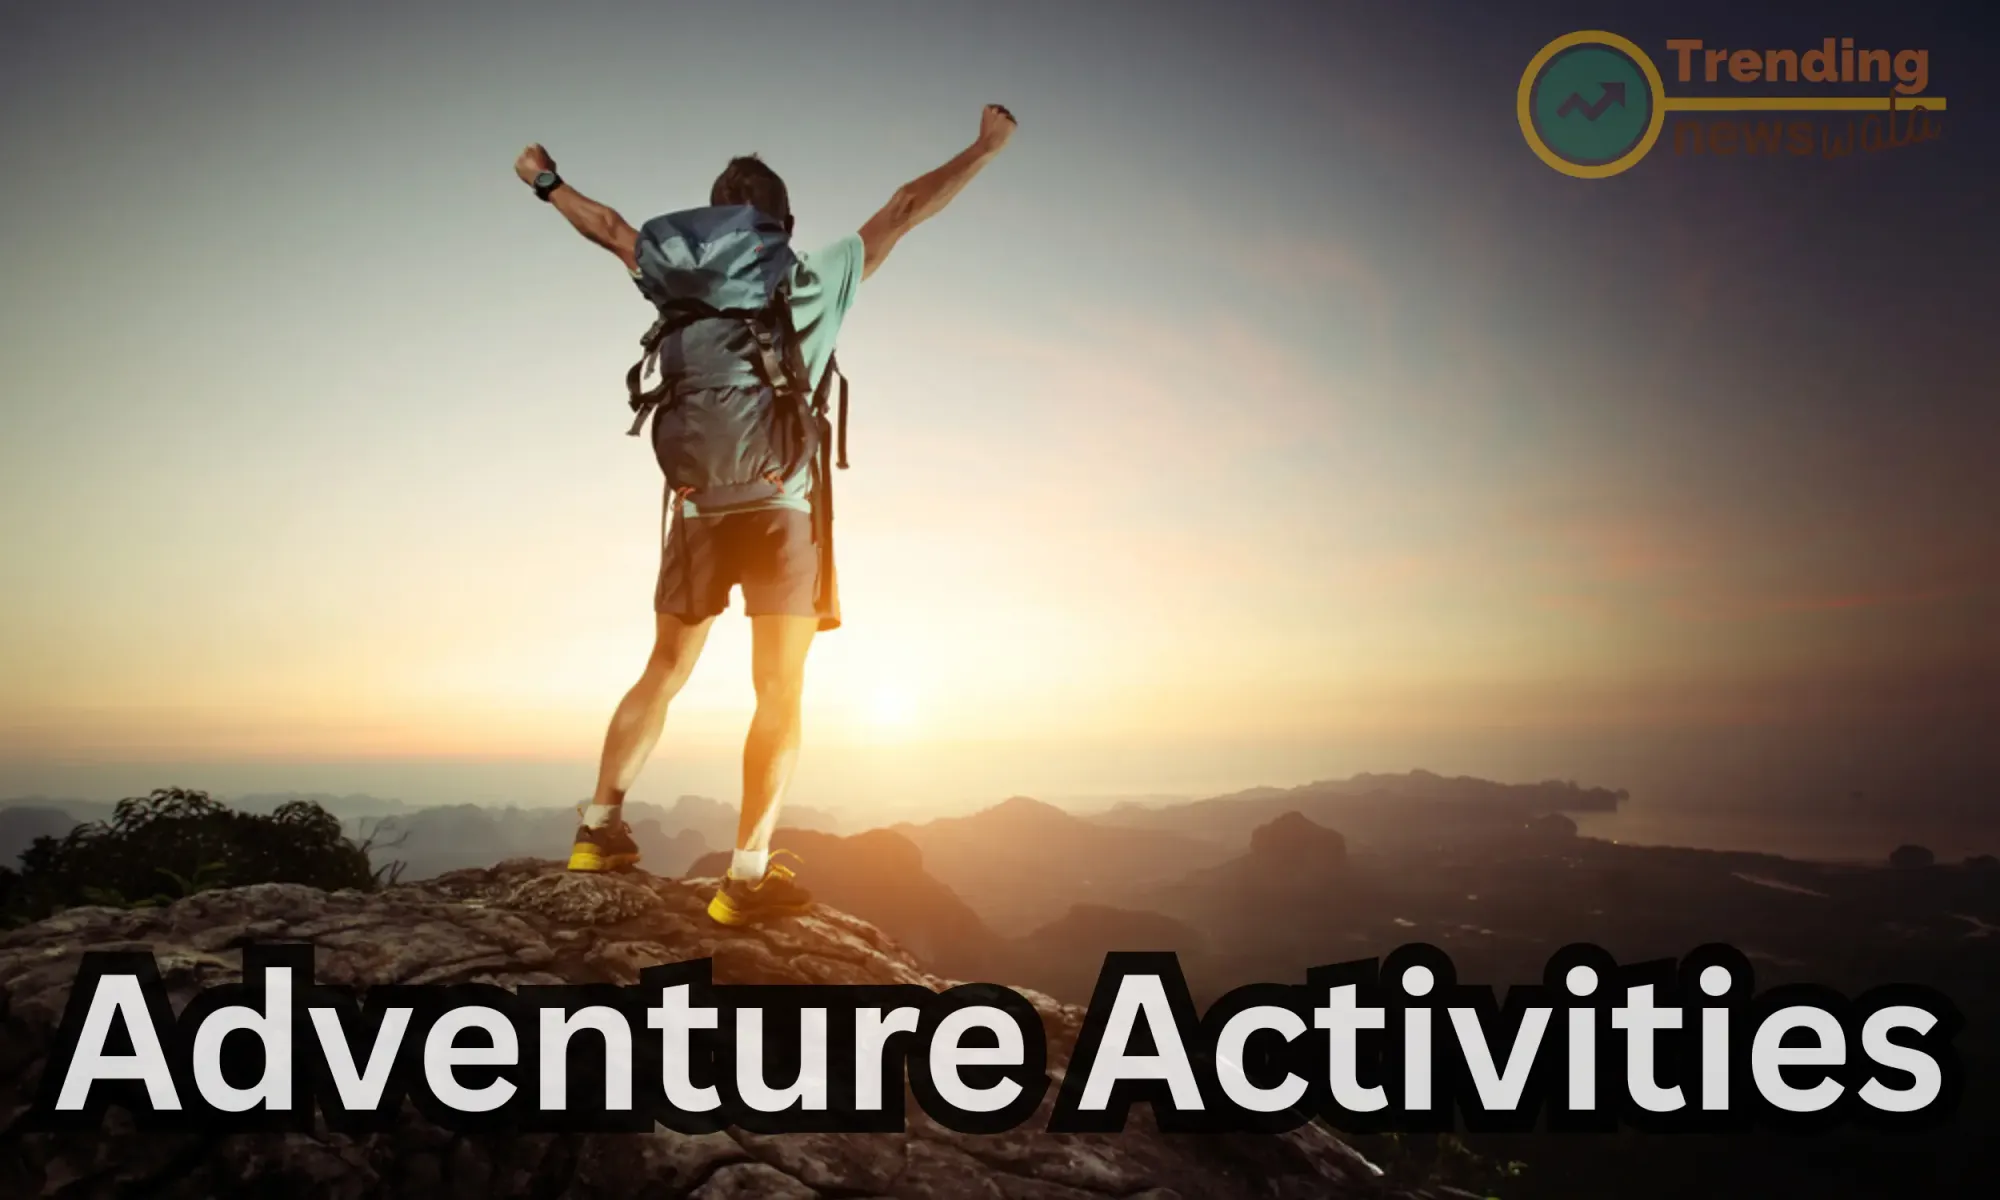 Adventure activities in India